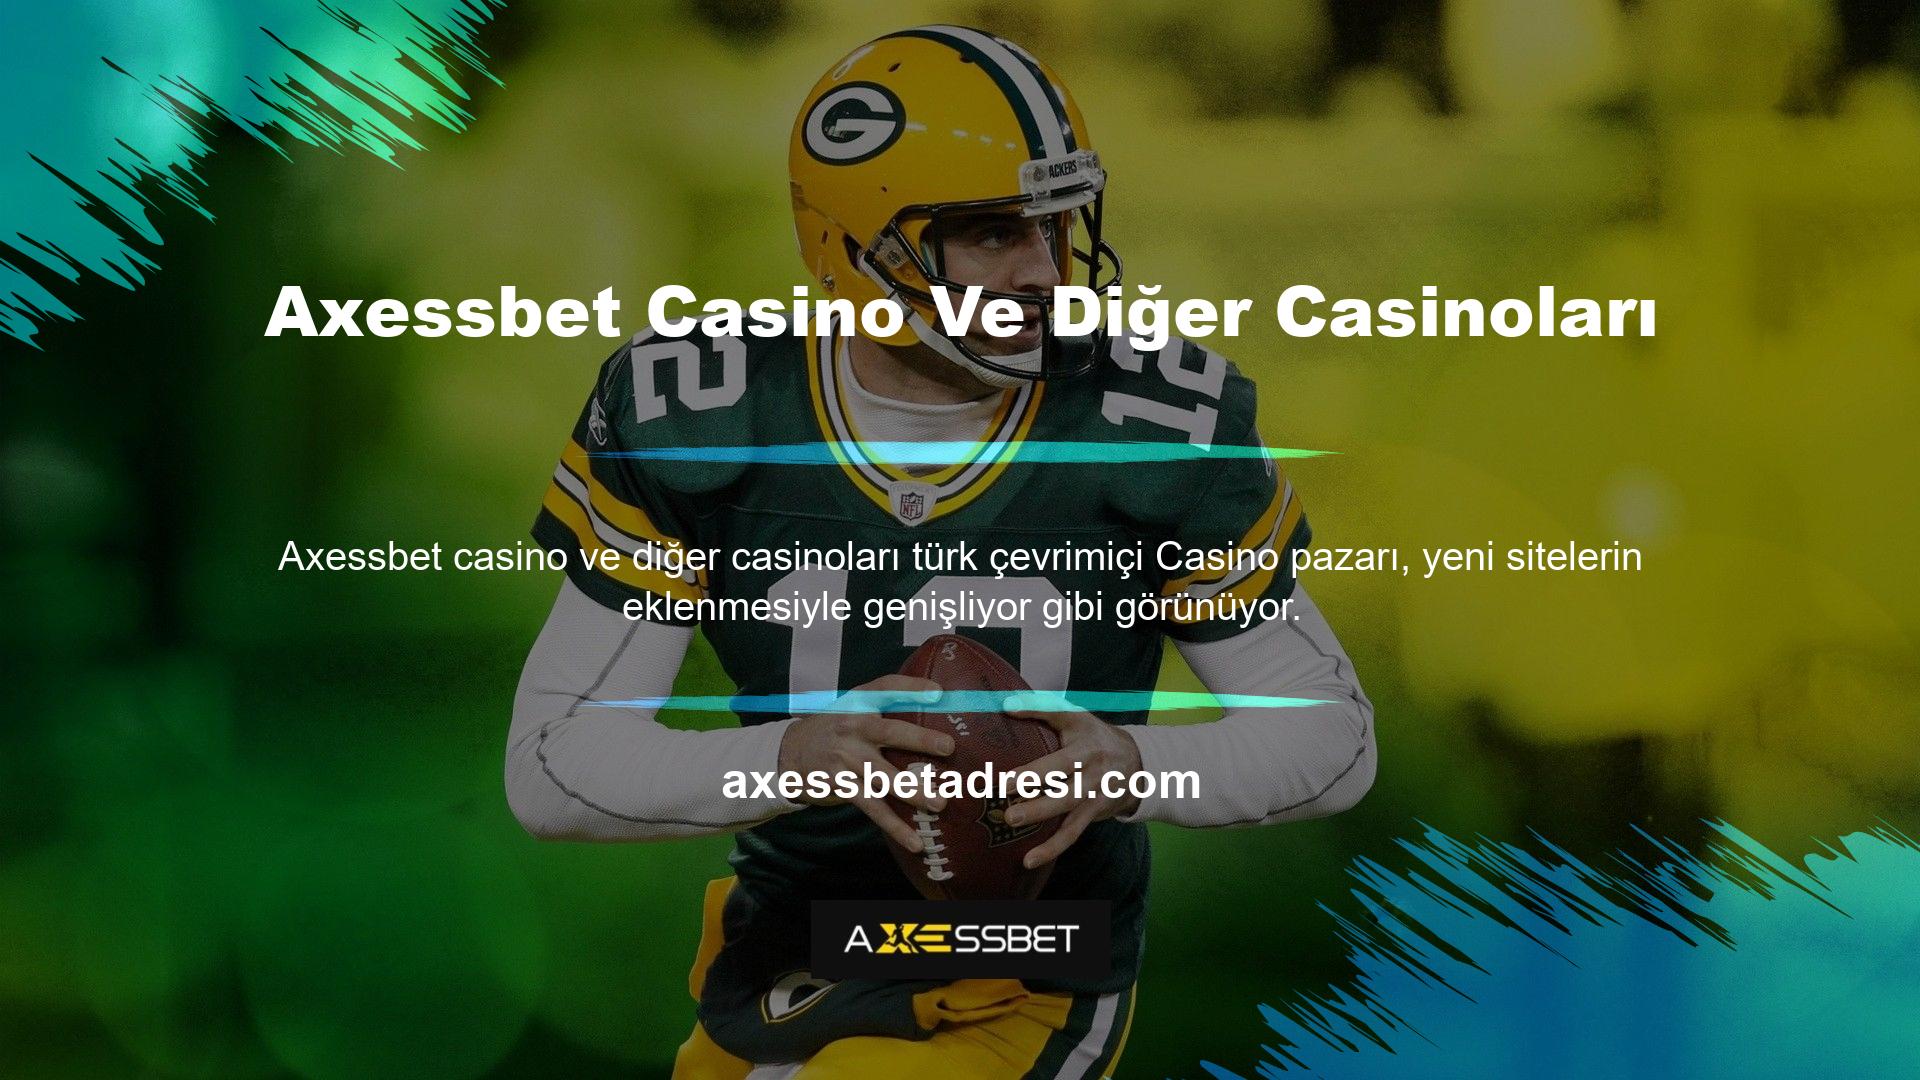 Axessbet casino, bahis oynamayı ve oyun oynamayı kolaylaştırır